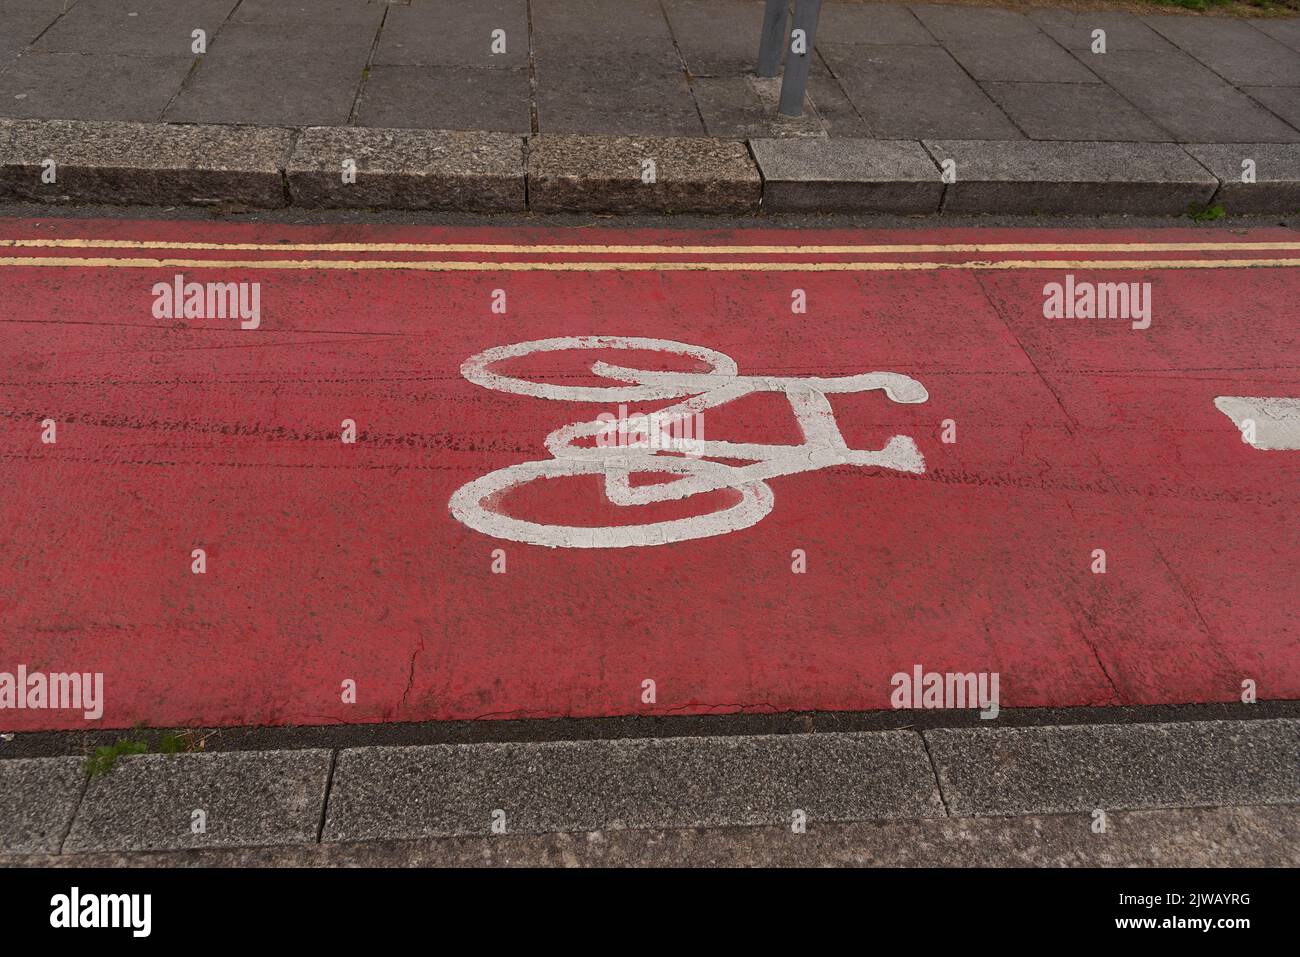 Plymouth, Devon, Inglaterra, Reino Unido. 2022. Bicicleta pintada de blanco sobre la superficie de la carretera de color rojo a lo largo de una carretera de la ciudad que muestra la curva desplegable y doble línea amarilla Foto de stock